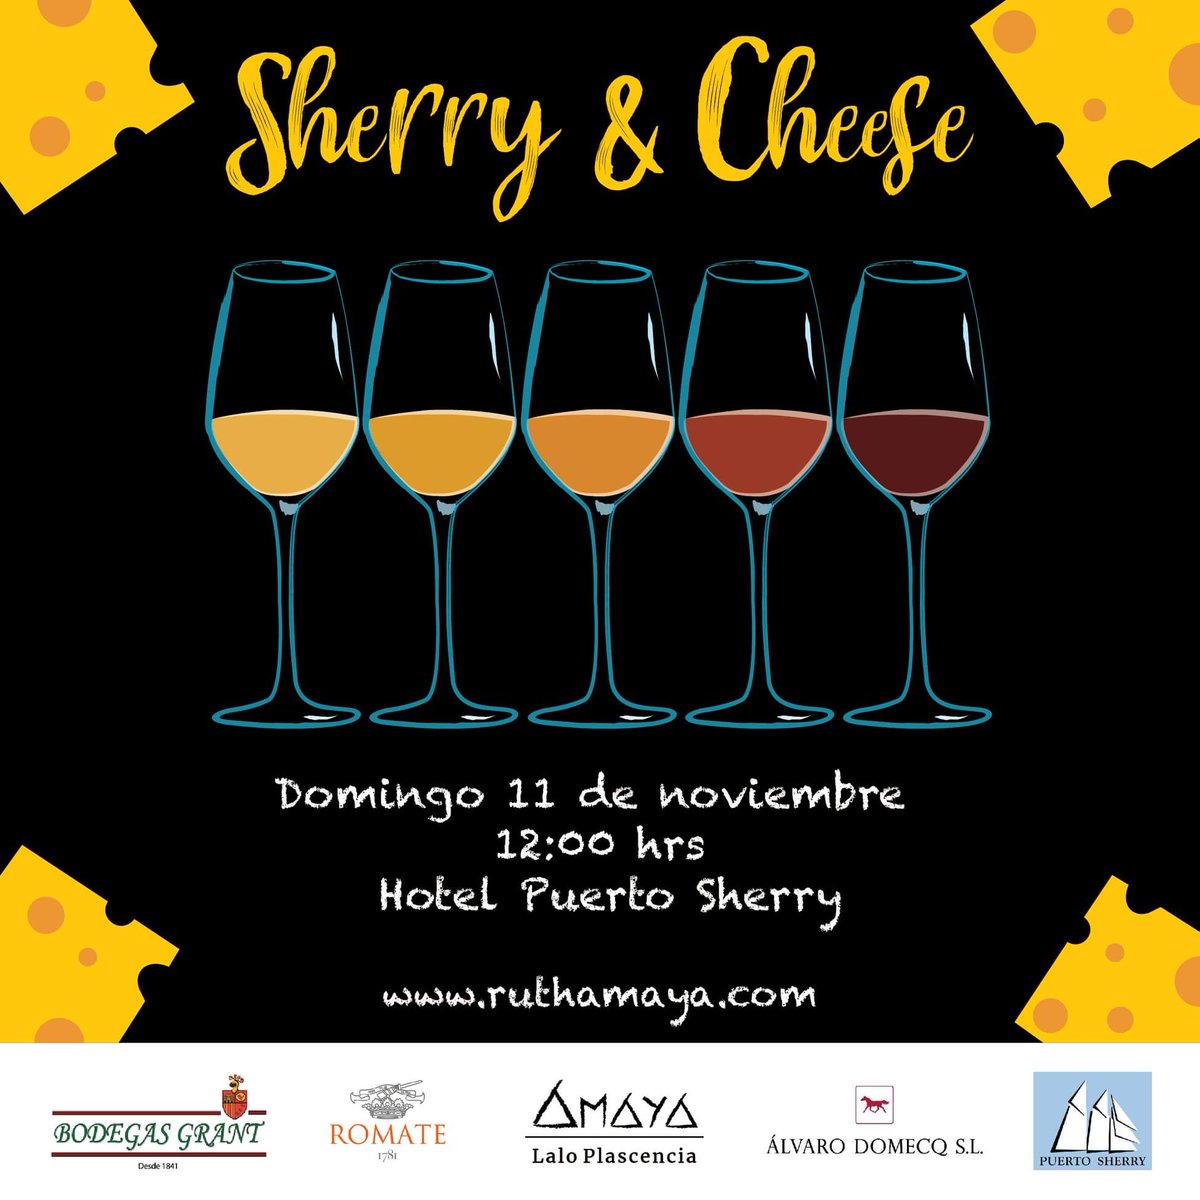 Vuelven las catas a @Puertosherry El próximo domingo, maridaje perfecto de quesos y vinos de Jerez de la mano de @ruthamaya171 Reserva ya! #sherrylovers #cheeselovers #vinoyqueso #catas #puertosherryestádemoda